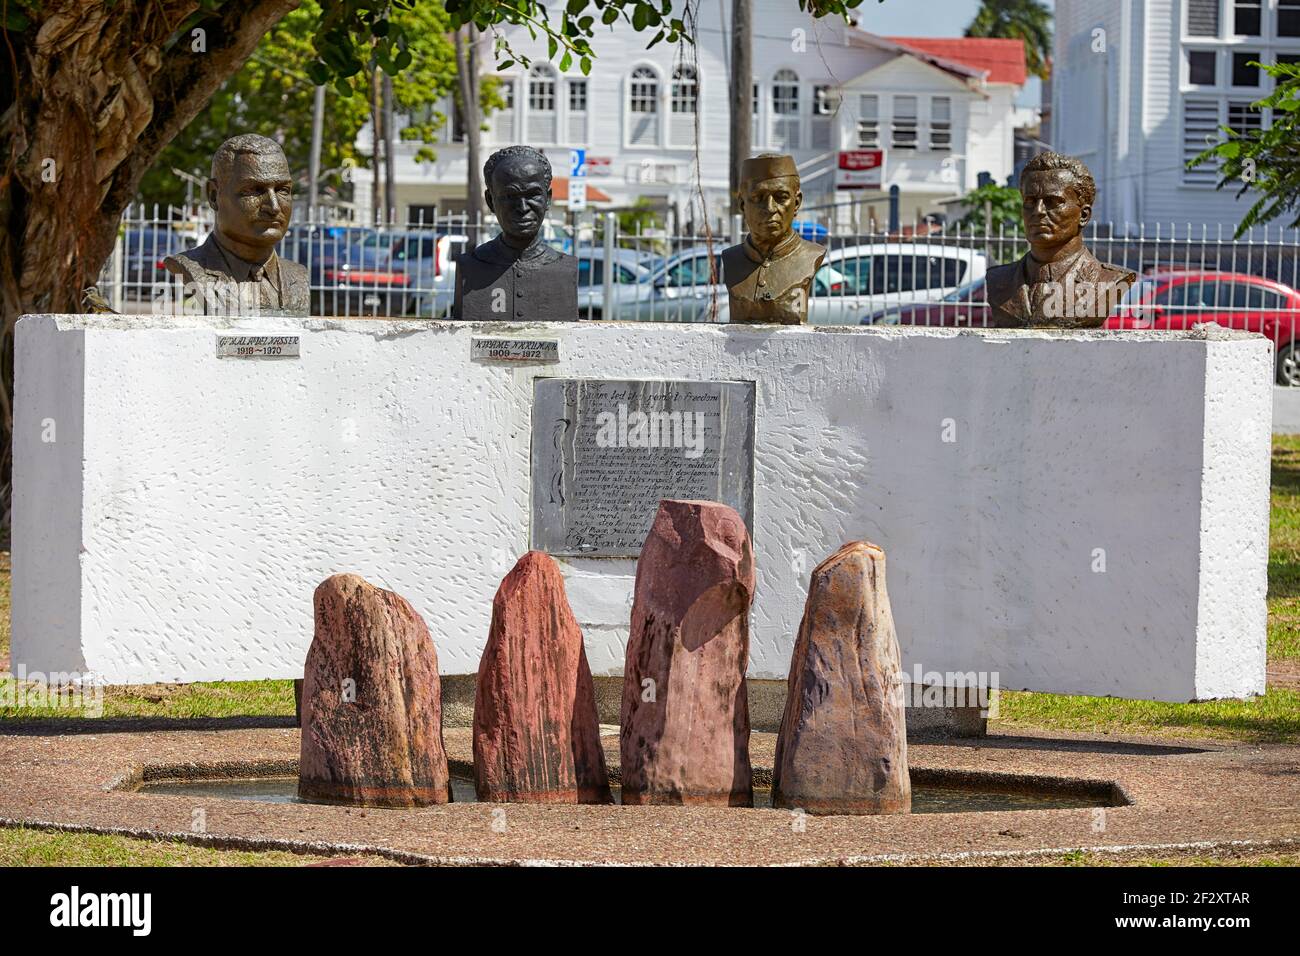 Le Monument du mouvement des pays non alignés à Georgetown Guyana en Amérique du Sud Banque D'Images